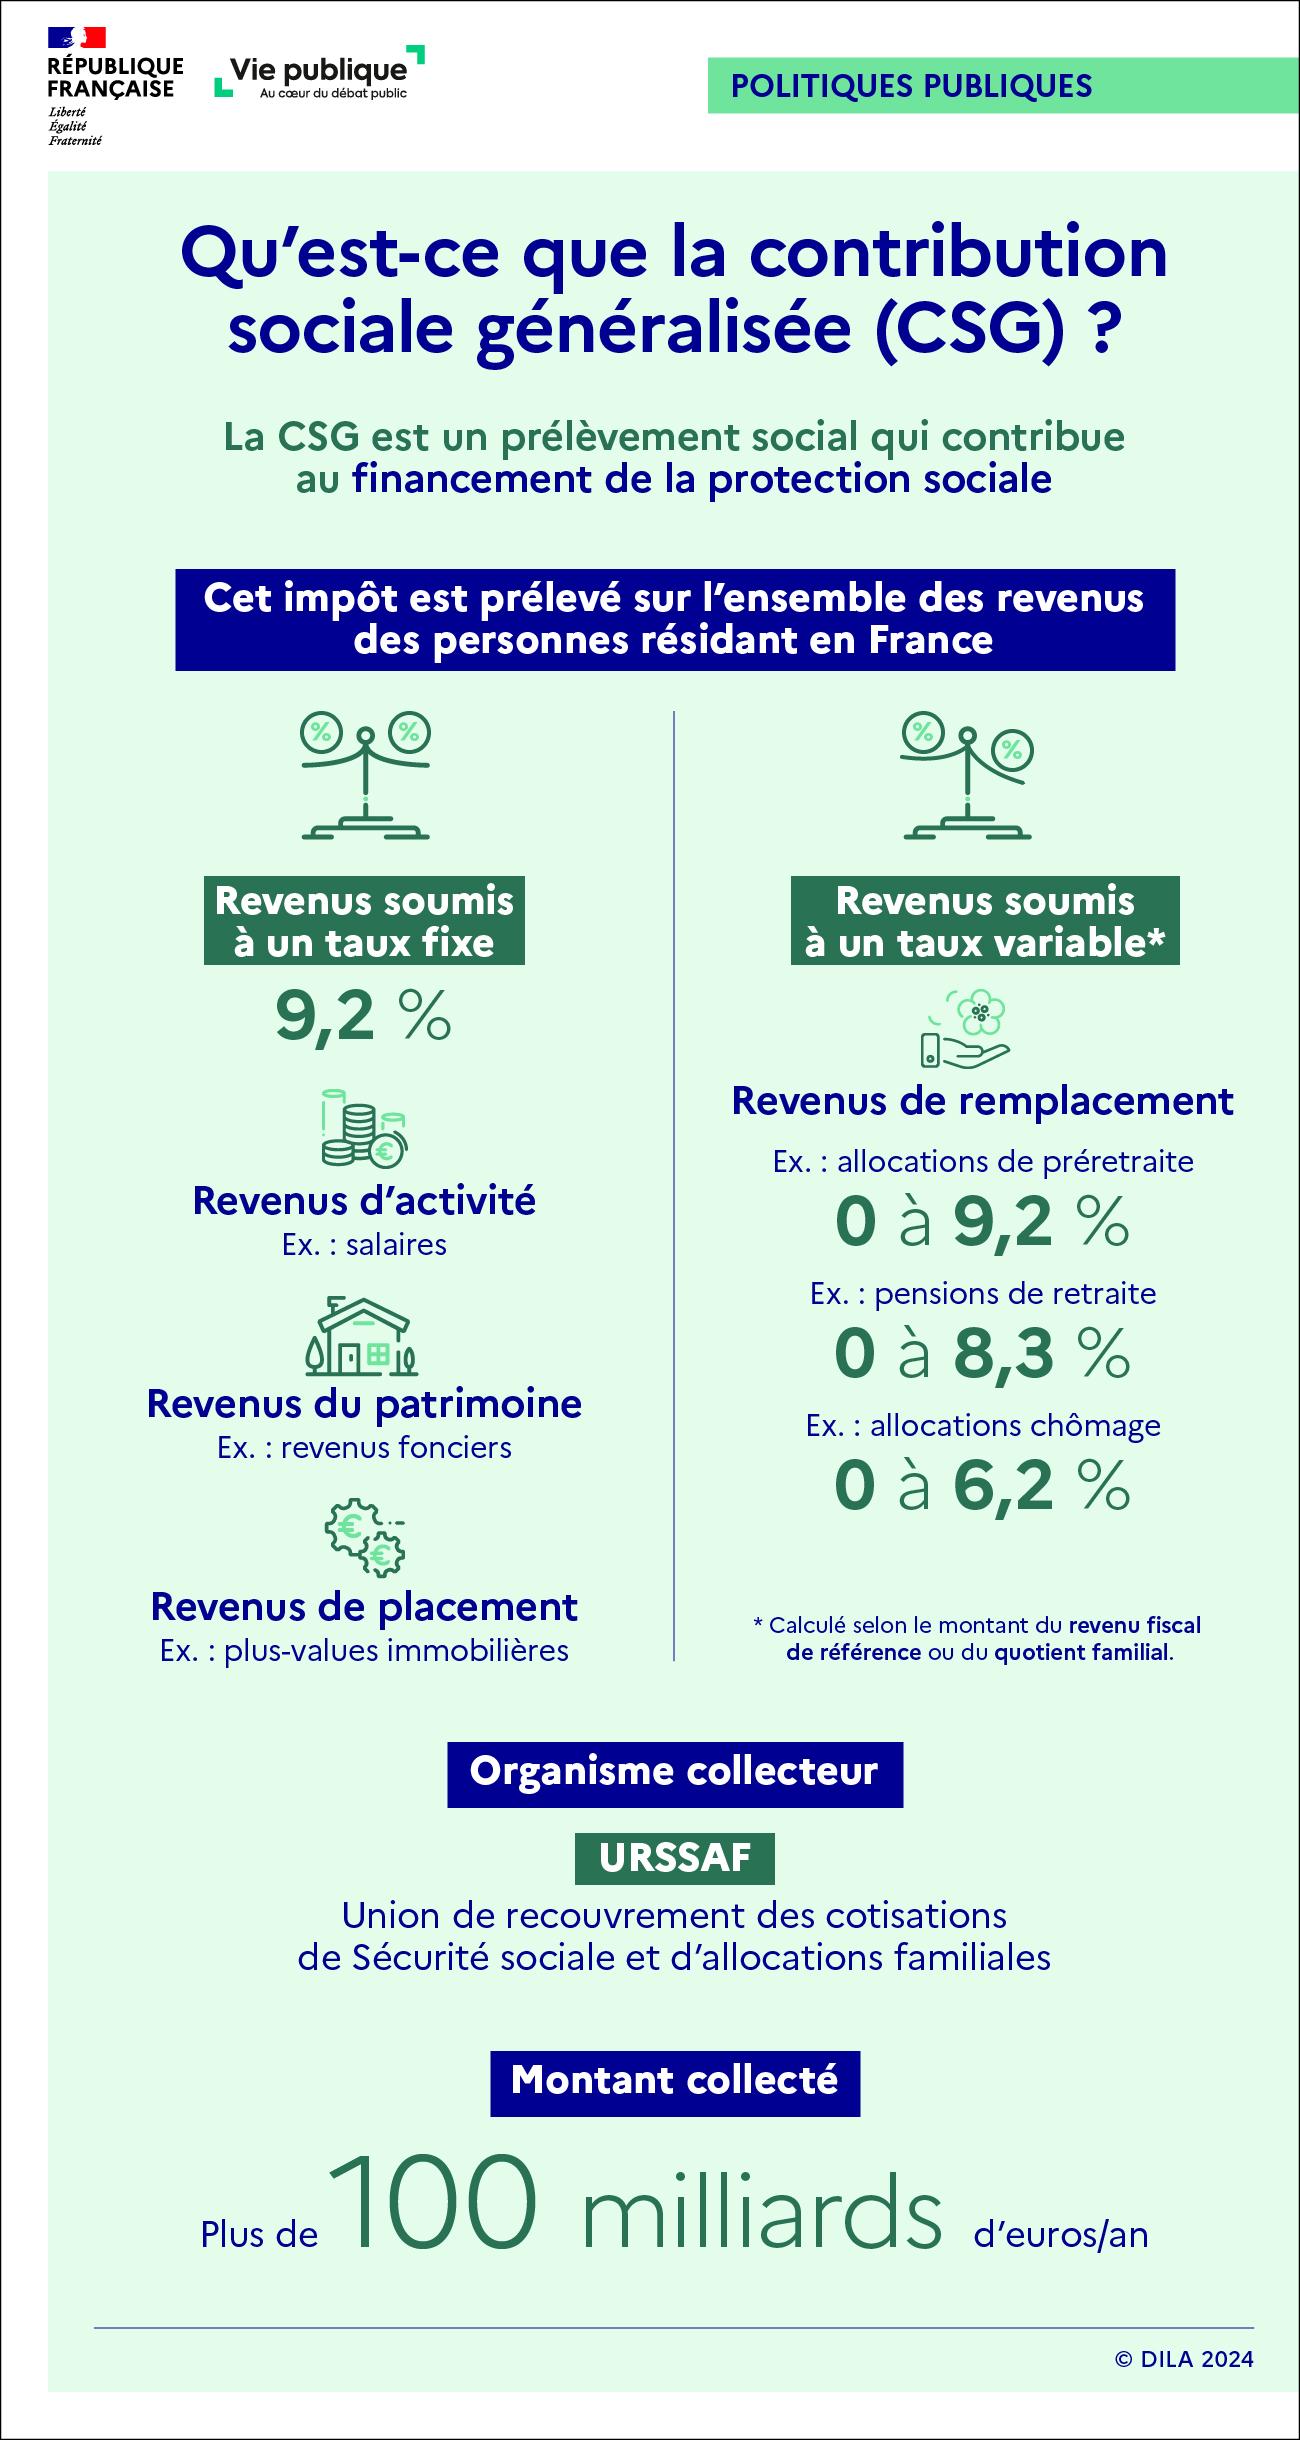 Infographie sur la CSG : objectifs, taux d'imposition selon le revenu perçu, organisme collecteur, montant collecté chaque année.